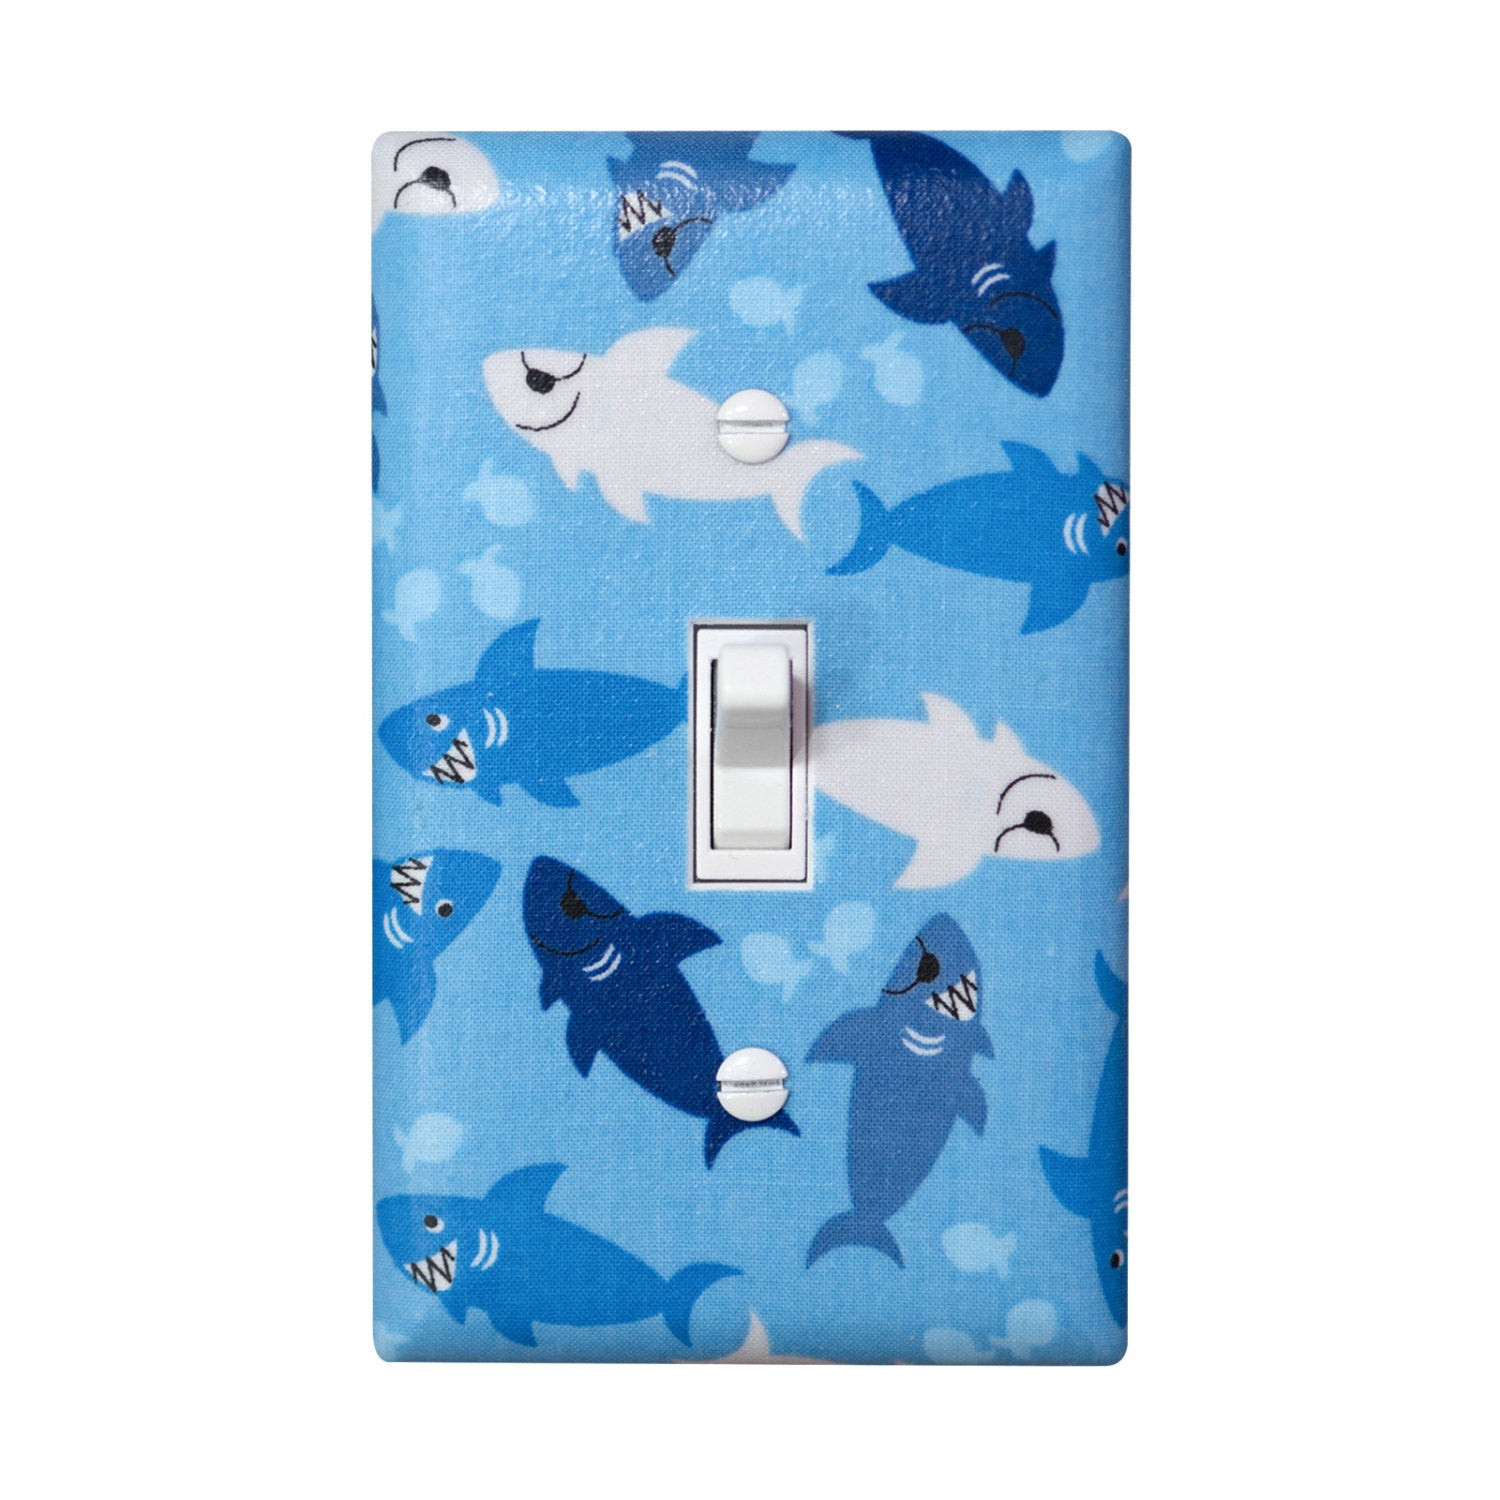 Shark Bathroom Decor
 Shark Light Switch Plate Cover Boys Nursery Bathroom Decor